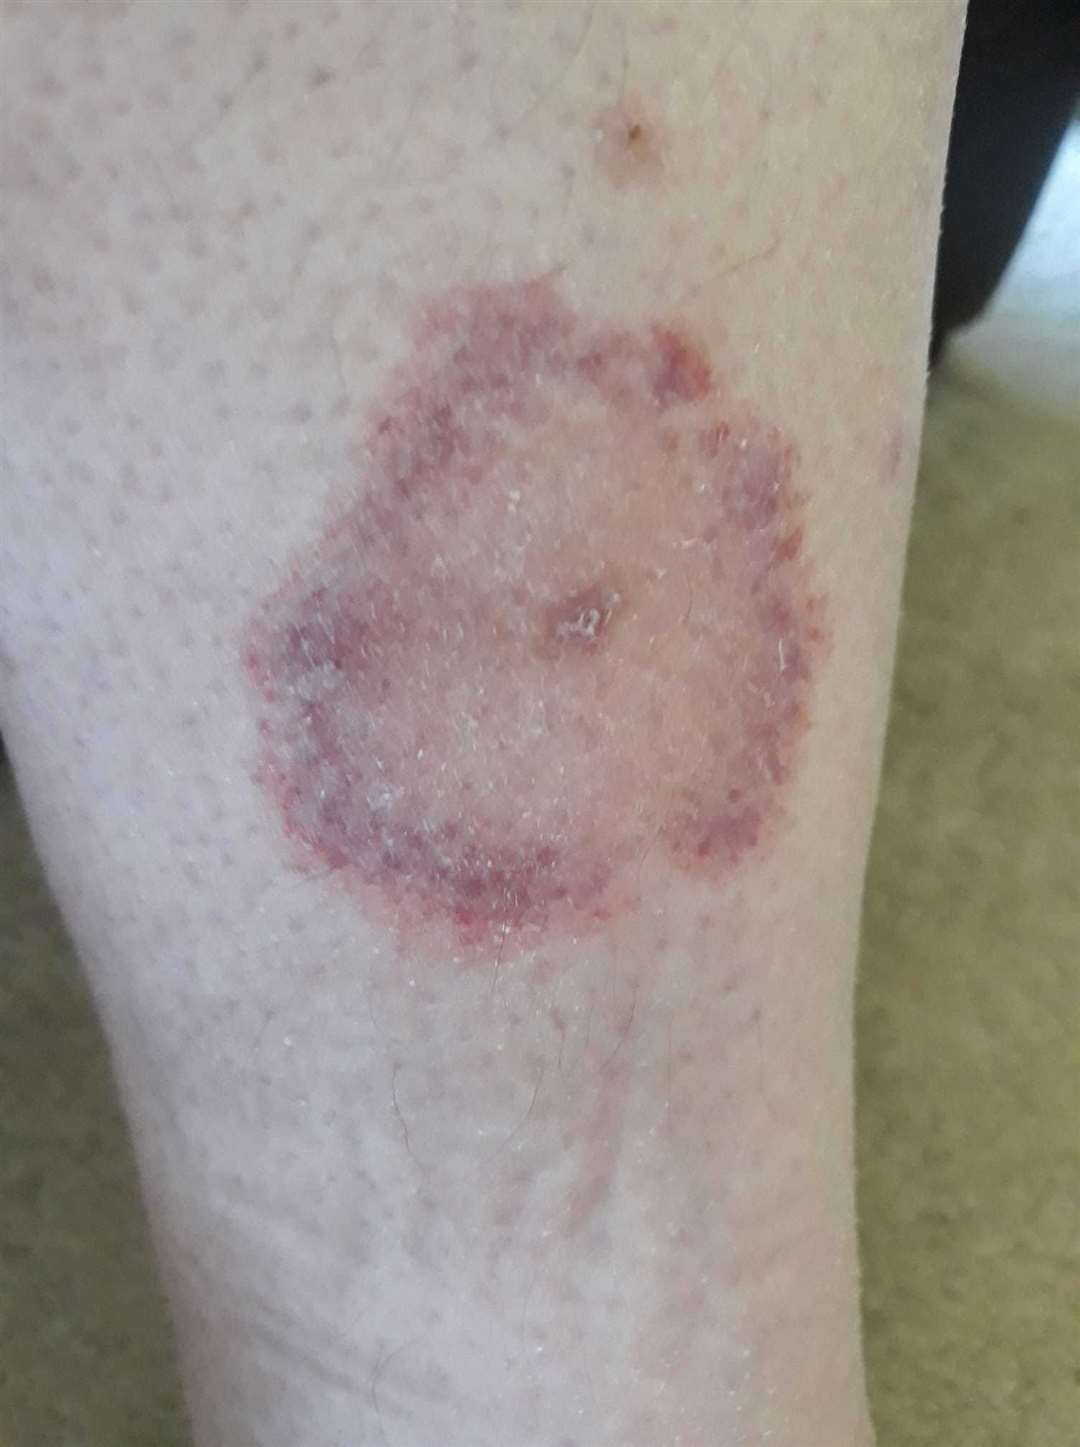 Once bitten: Mr Lobban's leg after the tick bite